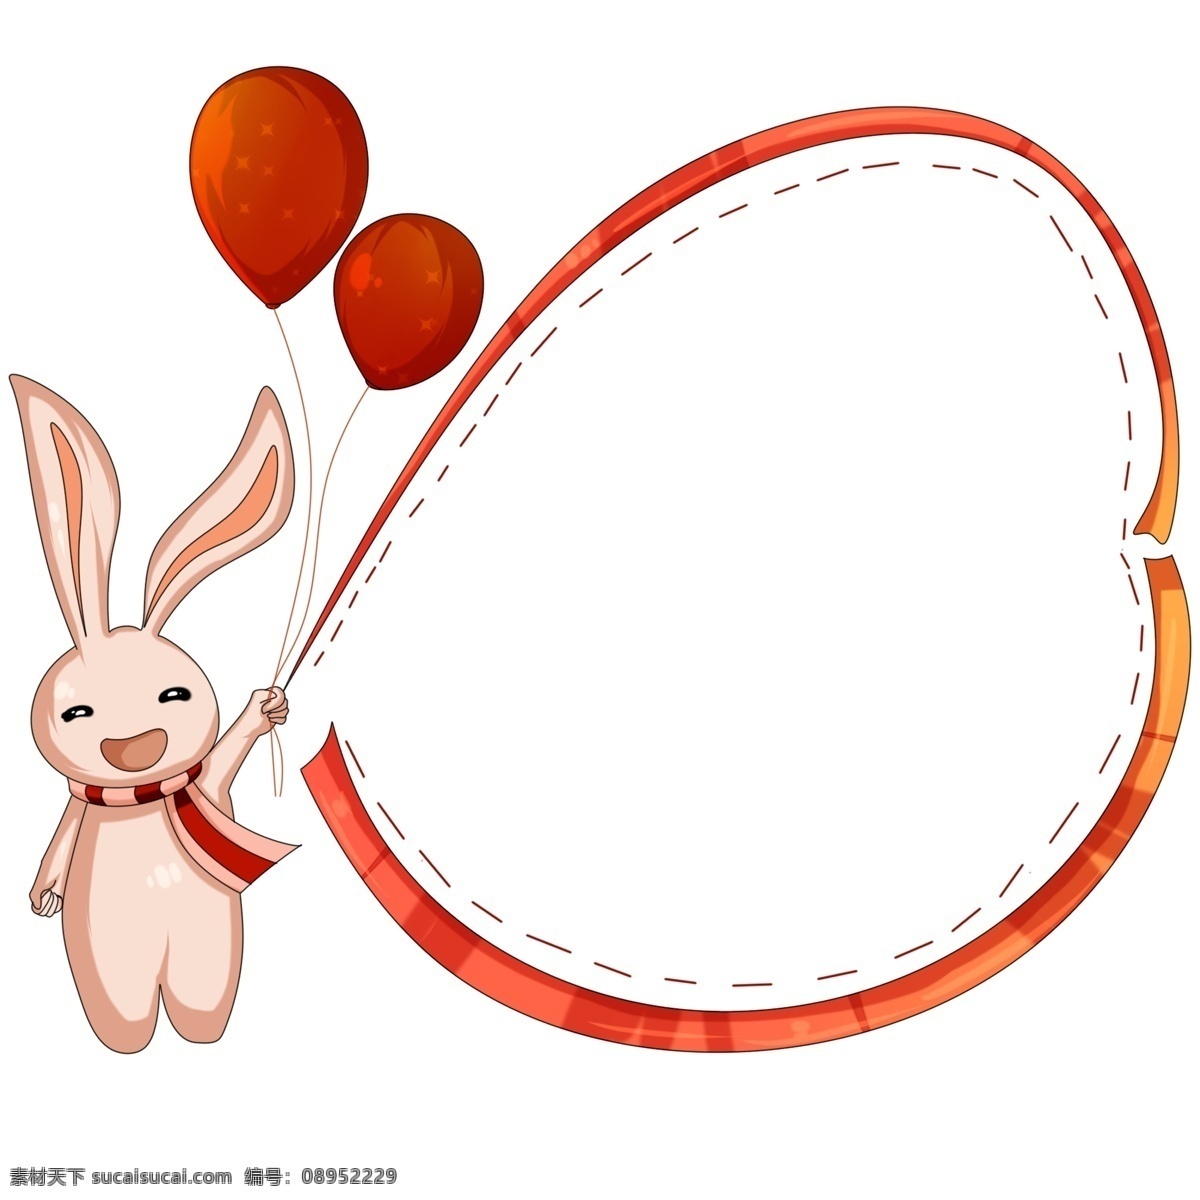 手绘 心形 可爱 边框 心形的边框 卡通插画 手绘插画 可爱边框 红色的气球 飘扬的气球 可爱的兔子